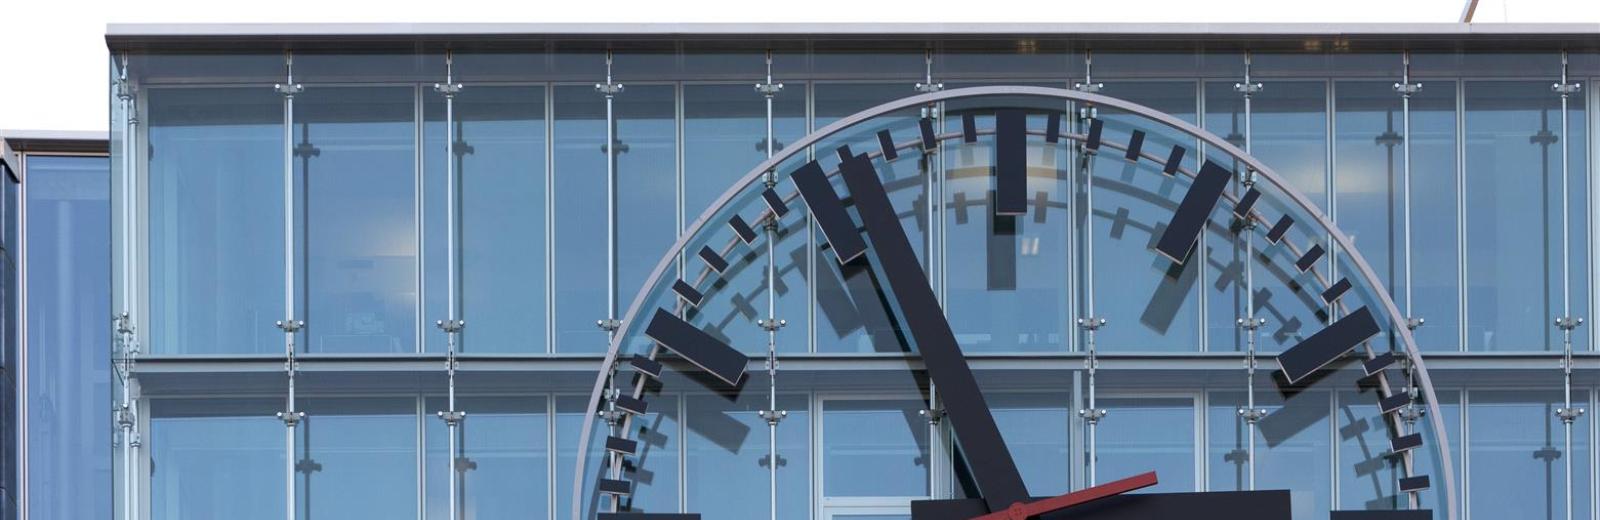 The largest Mondaine clock in Switzerland (nine meters in diameter) is in the Aarau train station The largest Mondaine clock in Switzerland (nine meters in diameter) is in the Aarau train station © SBB